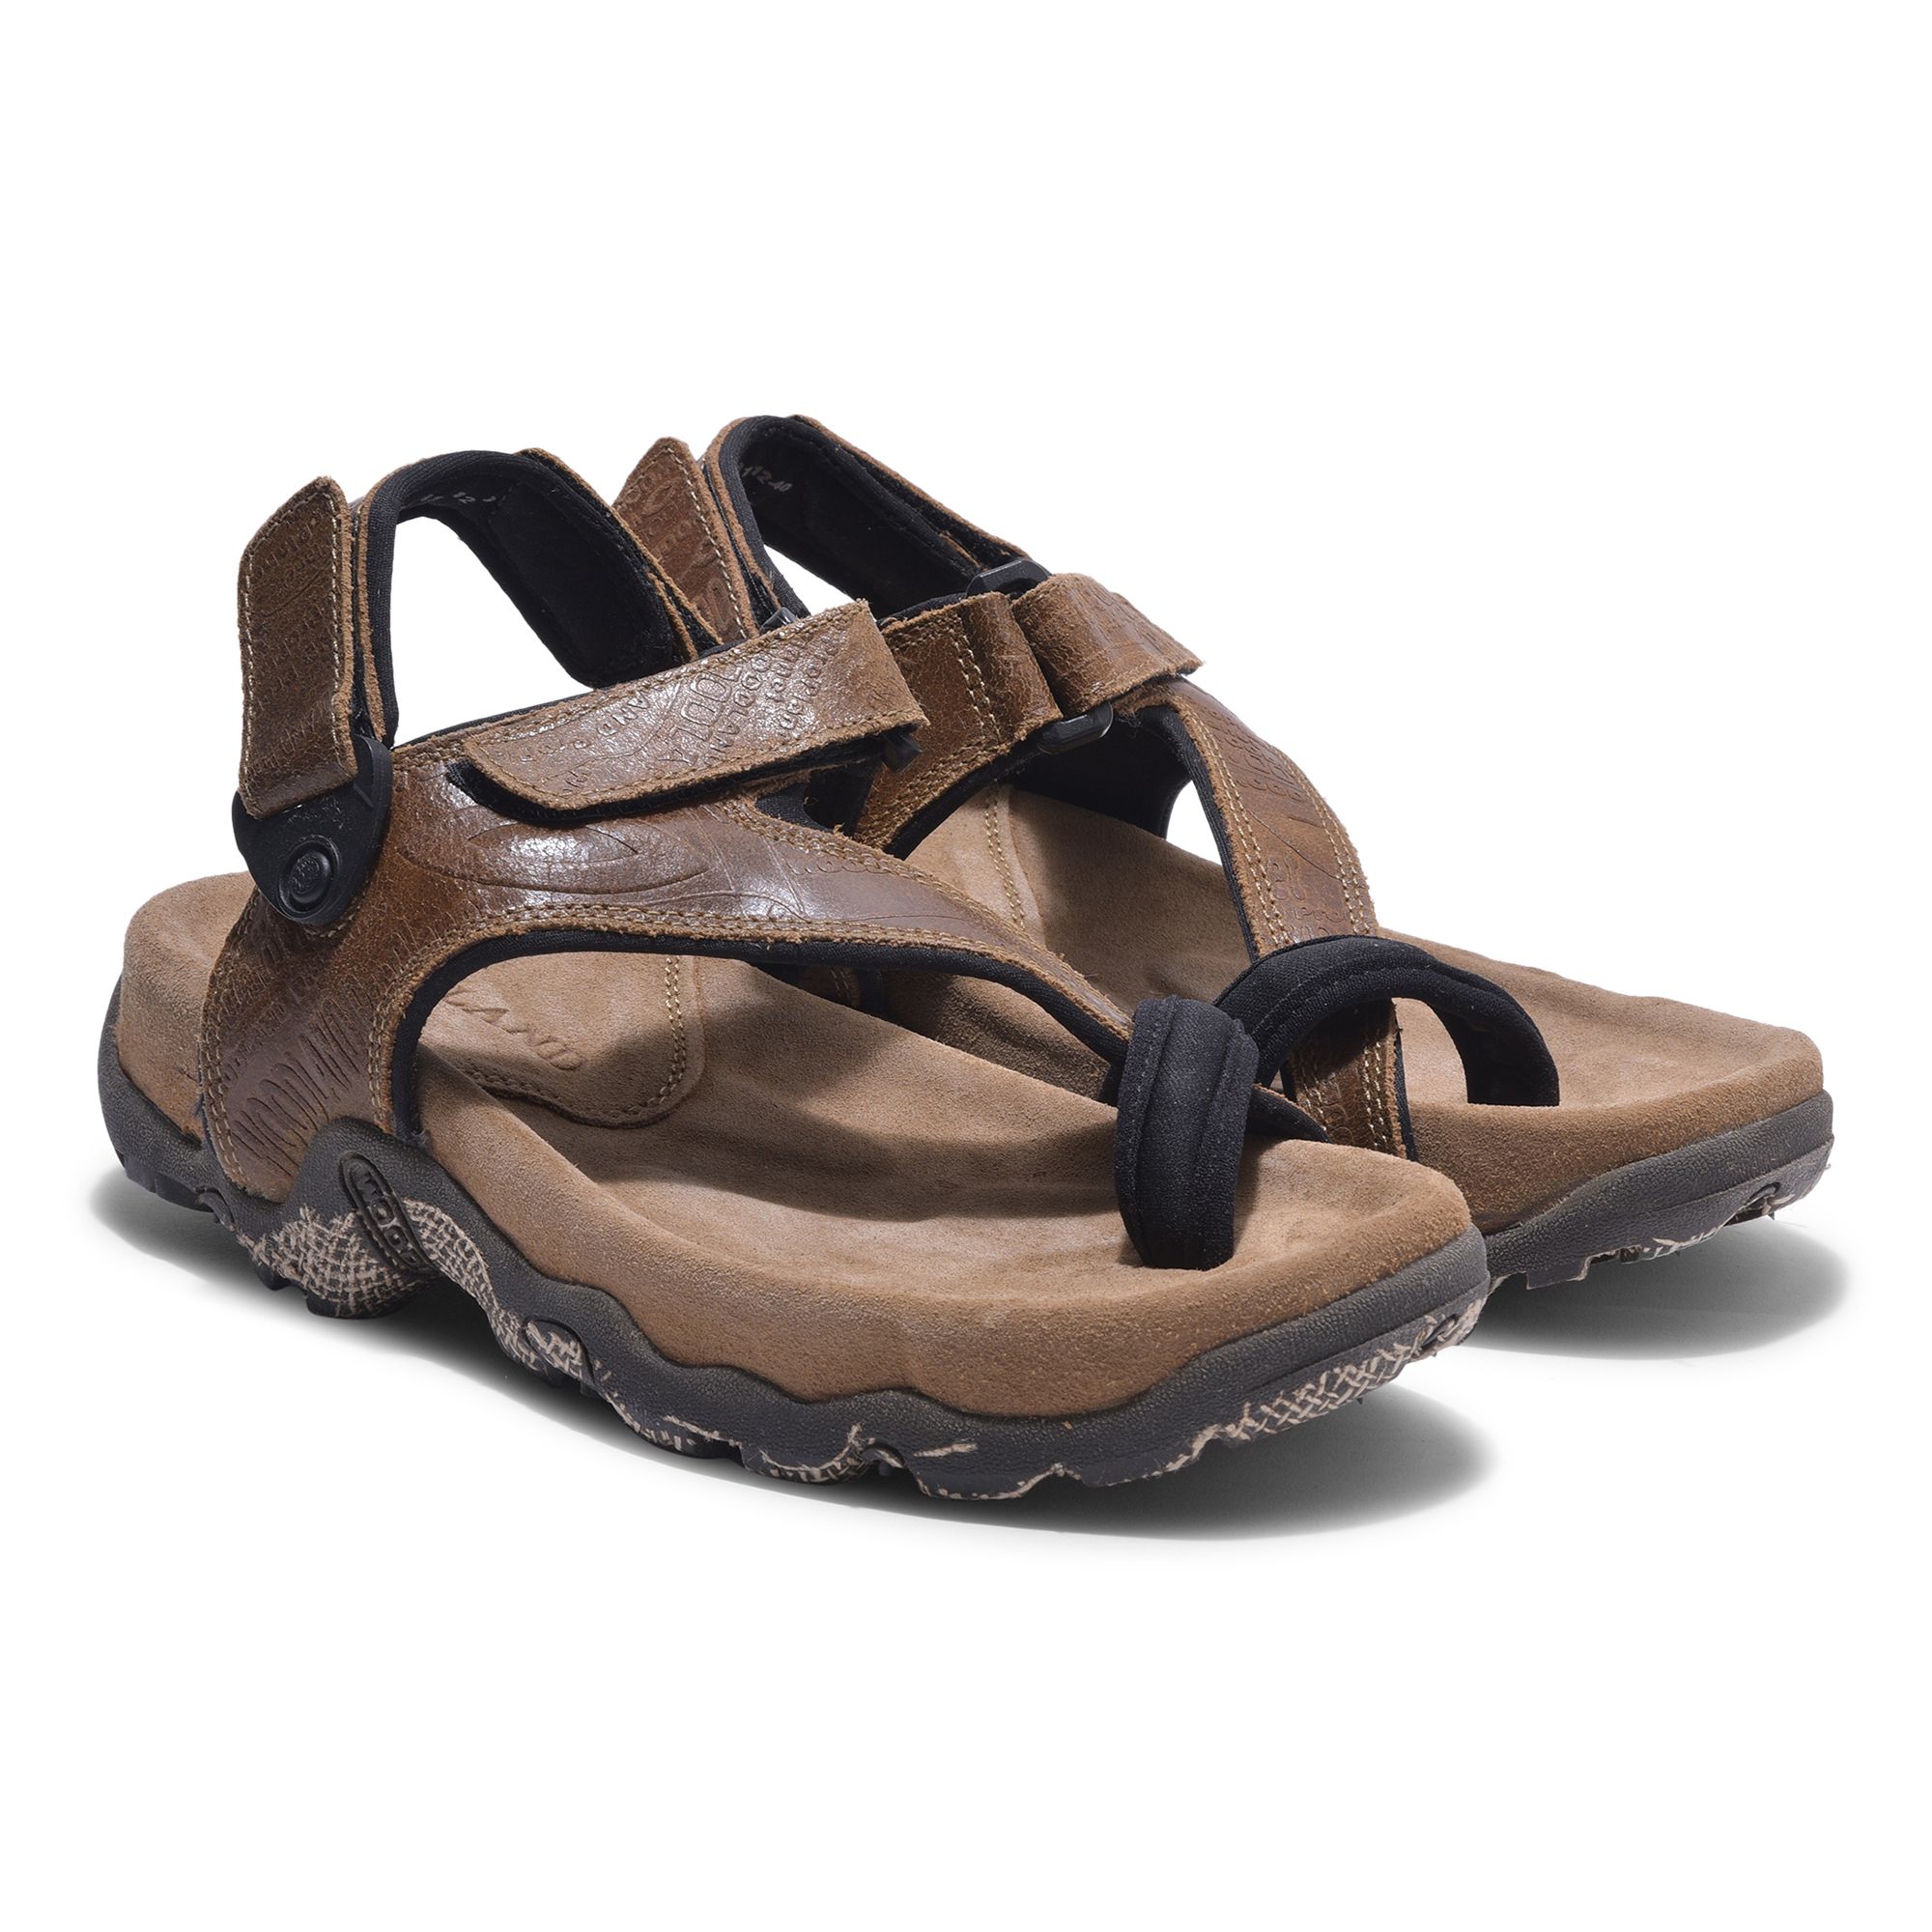 Woodland Men's Camel Sandals | Camel sandals, Sandals, Camel